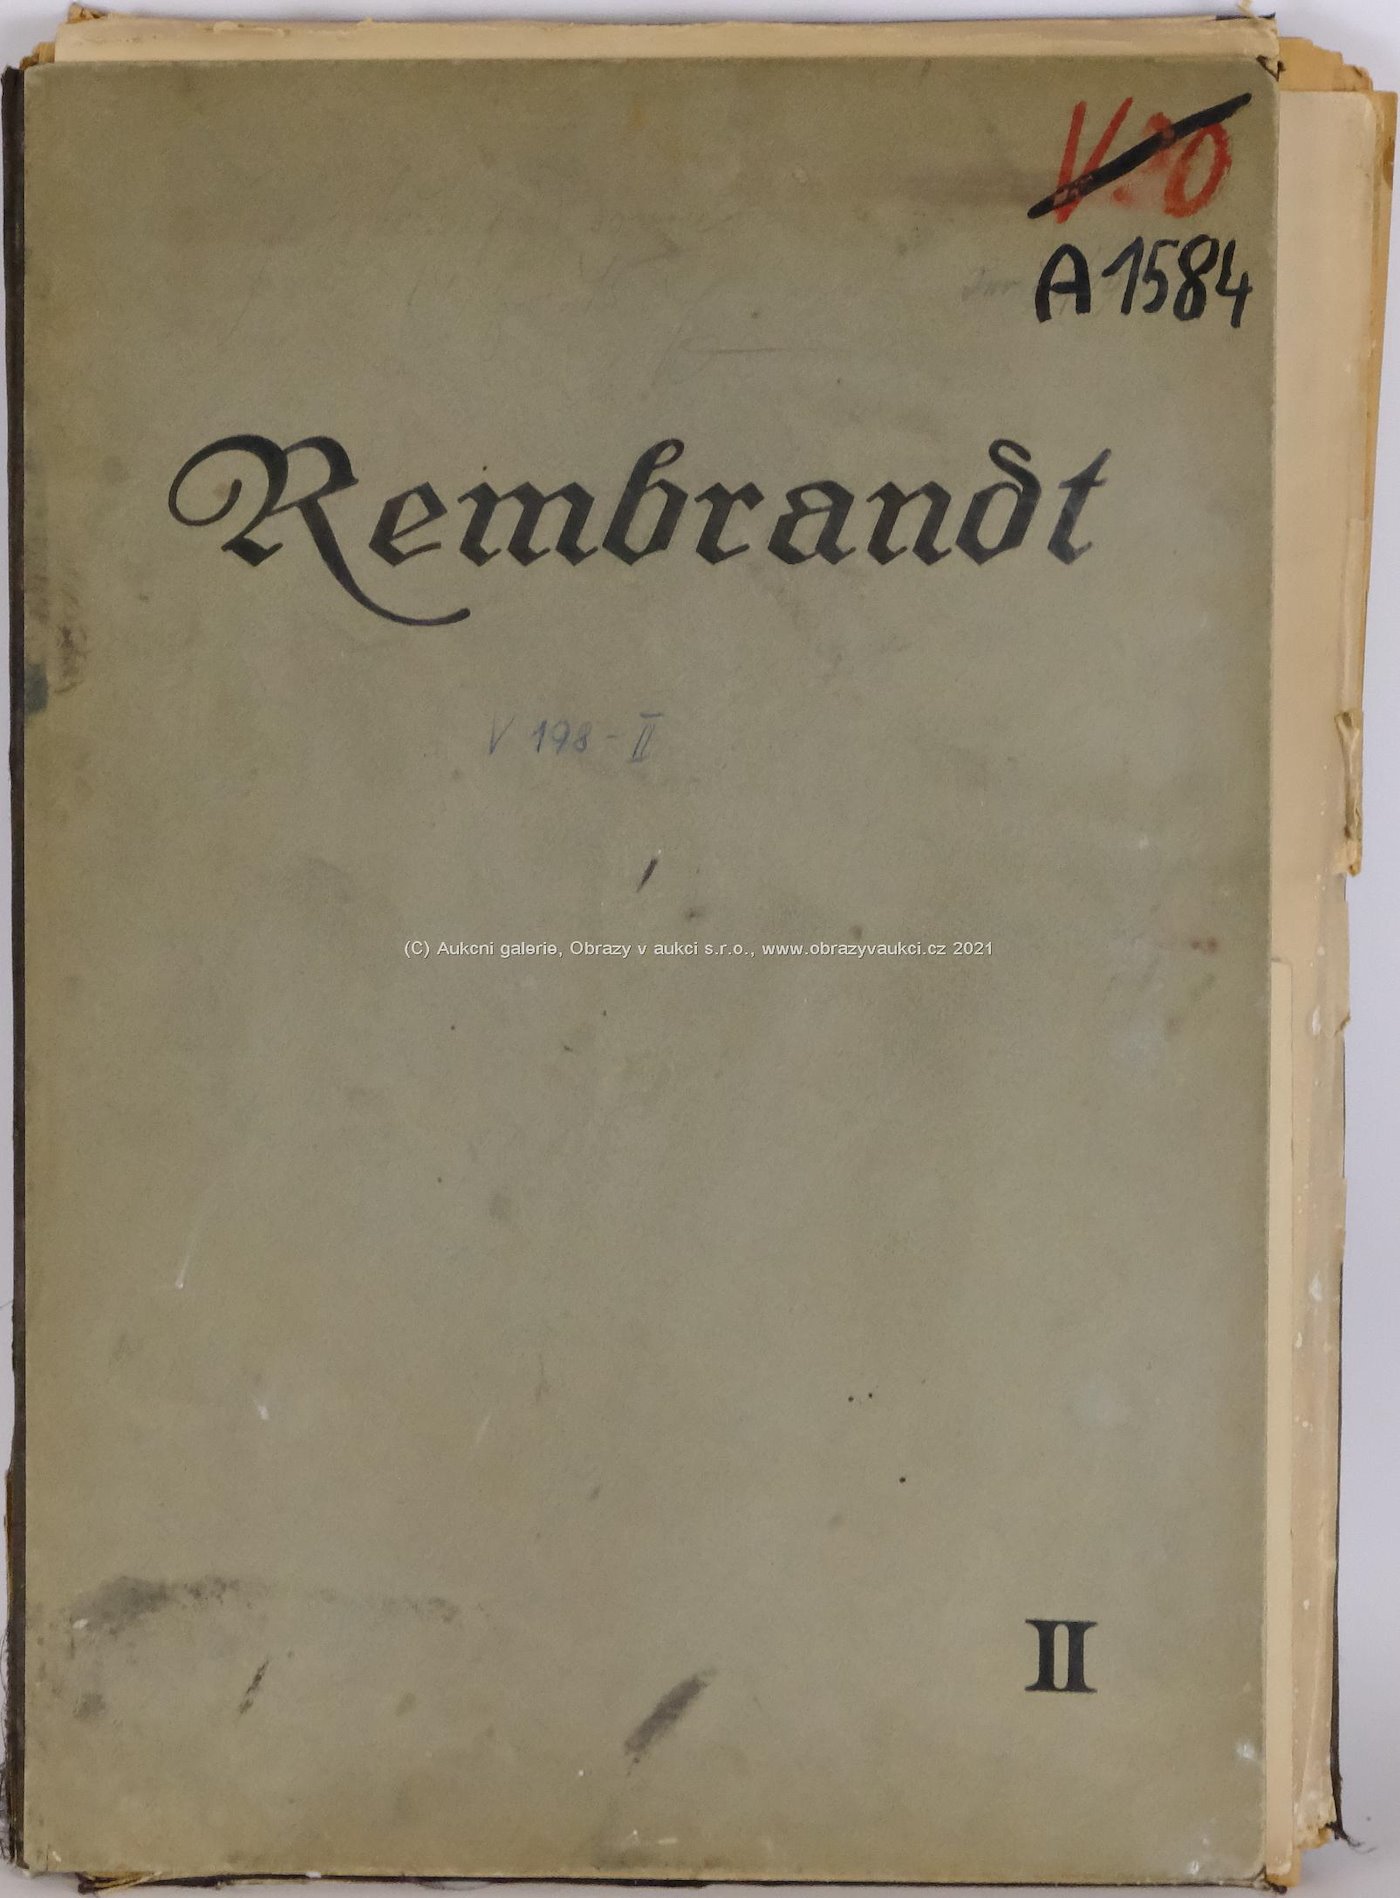 Rembrandt van Rijn - Rembrandts Sämtliche radierungen - 2.část